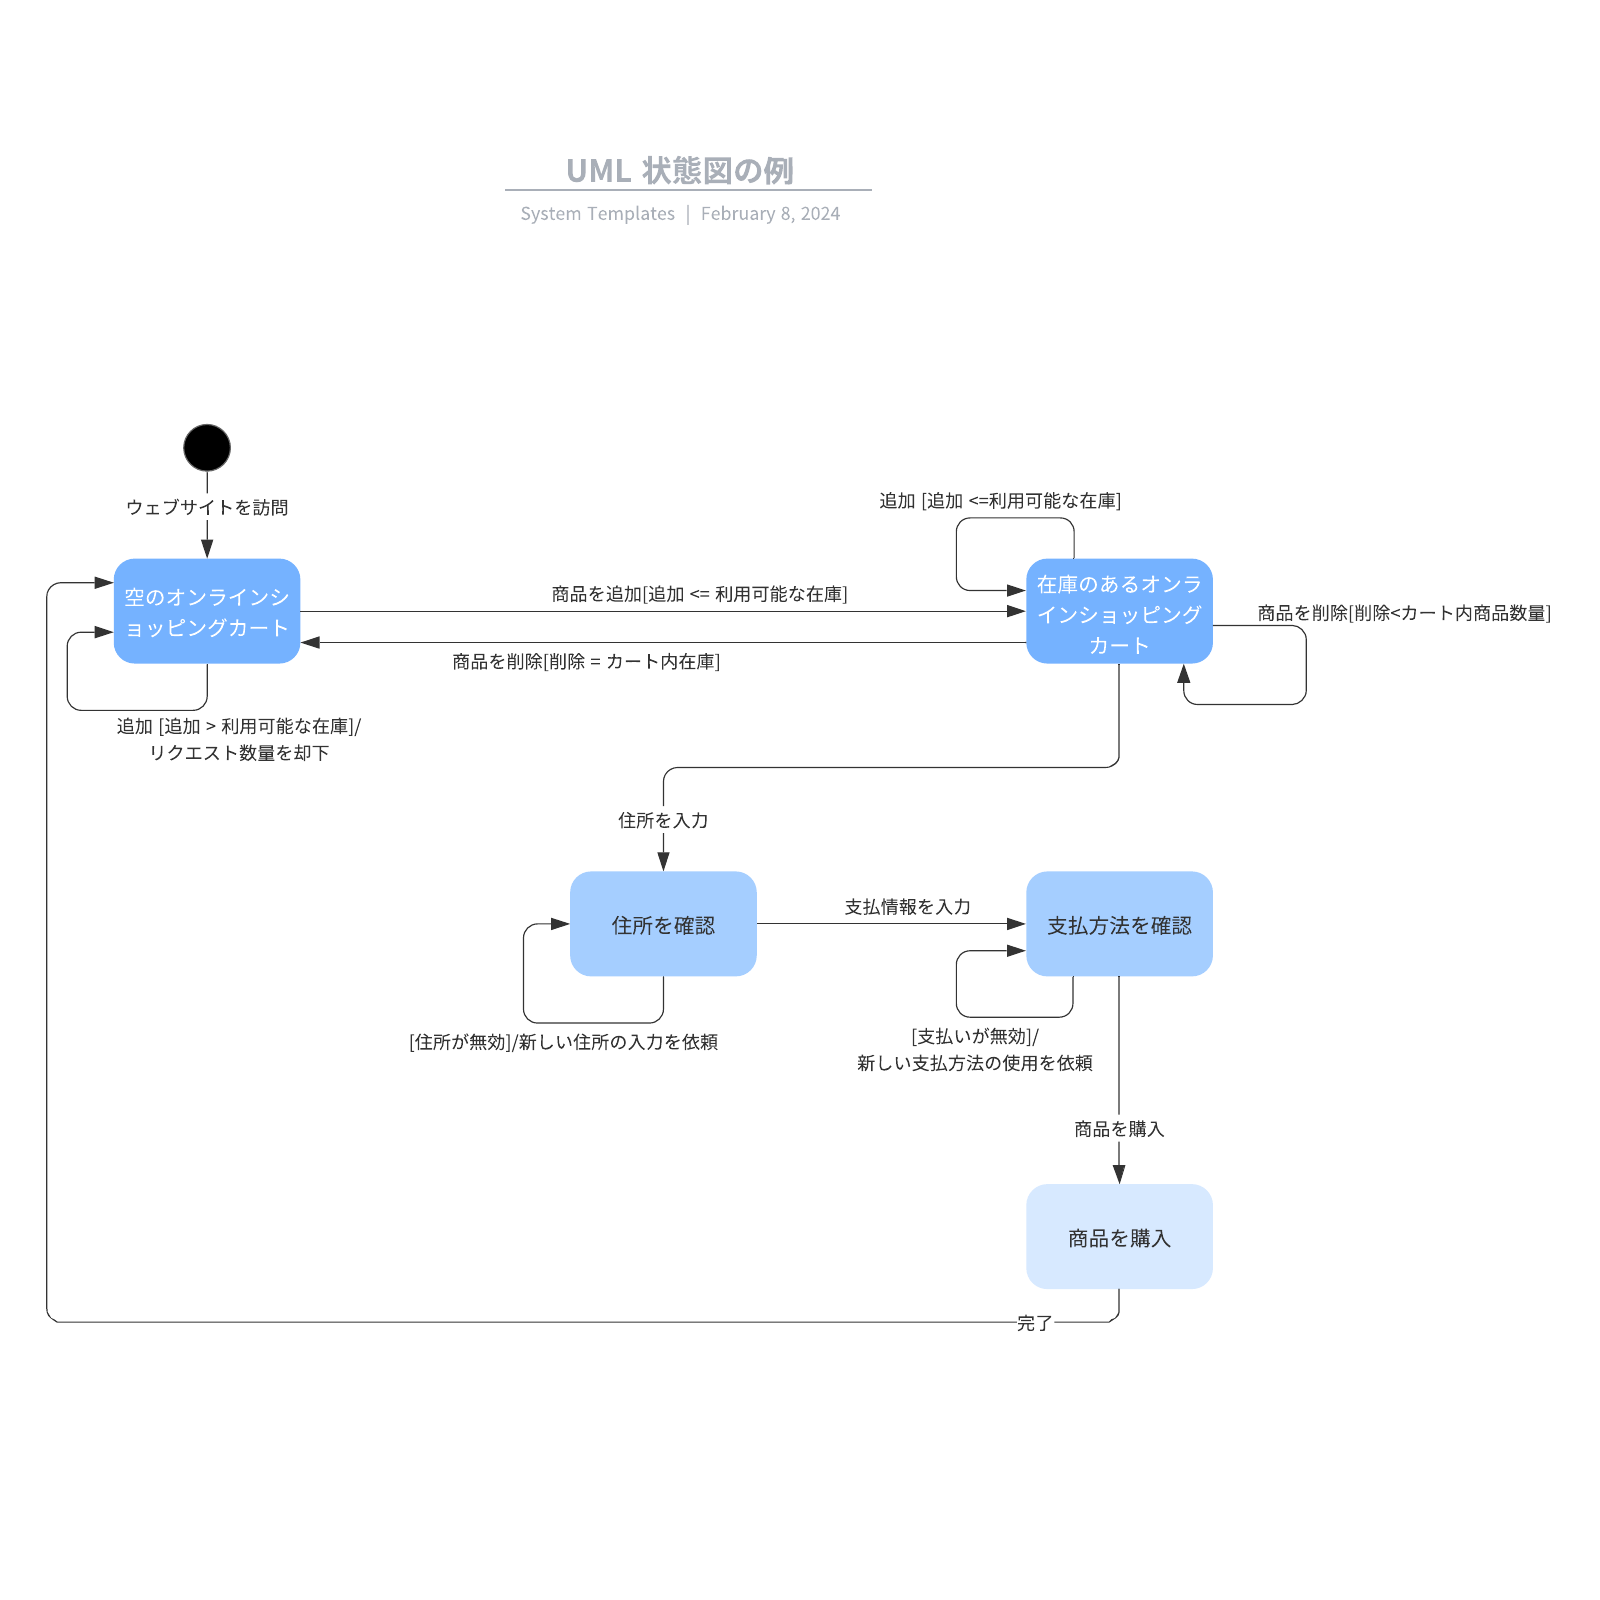 UML State Machine Diagram 状態遷移図の例